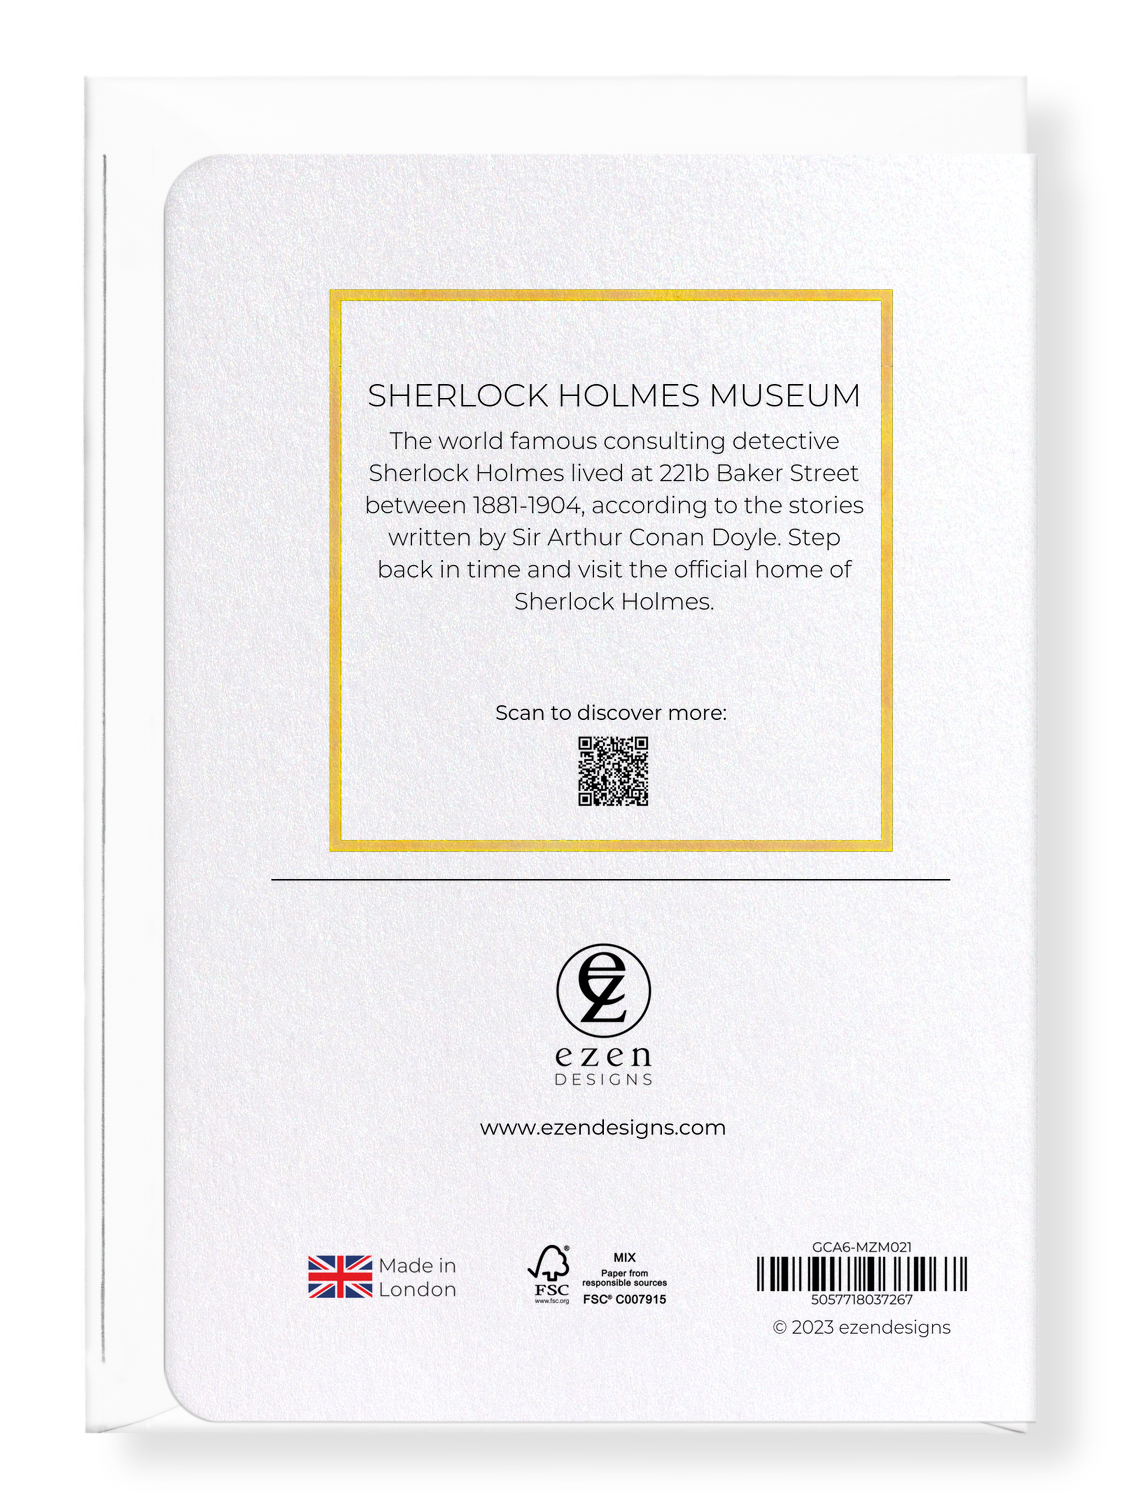 SHERLOCK HOLMES MUSEUM: Bespoke Greeting Card